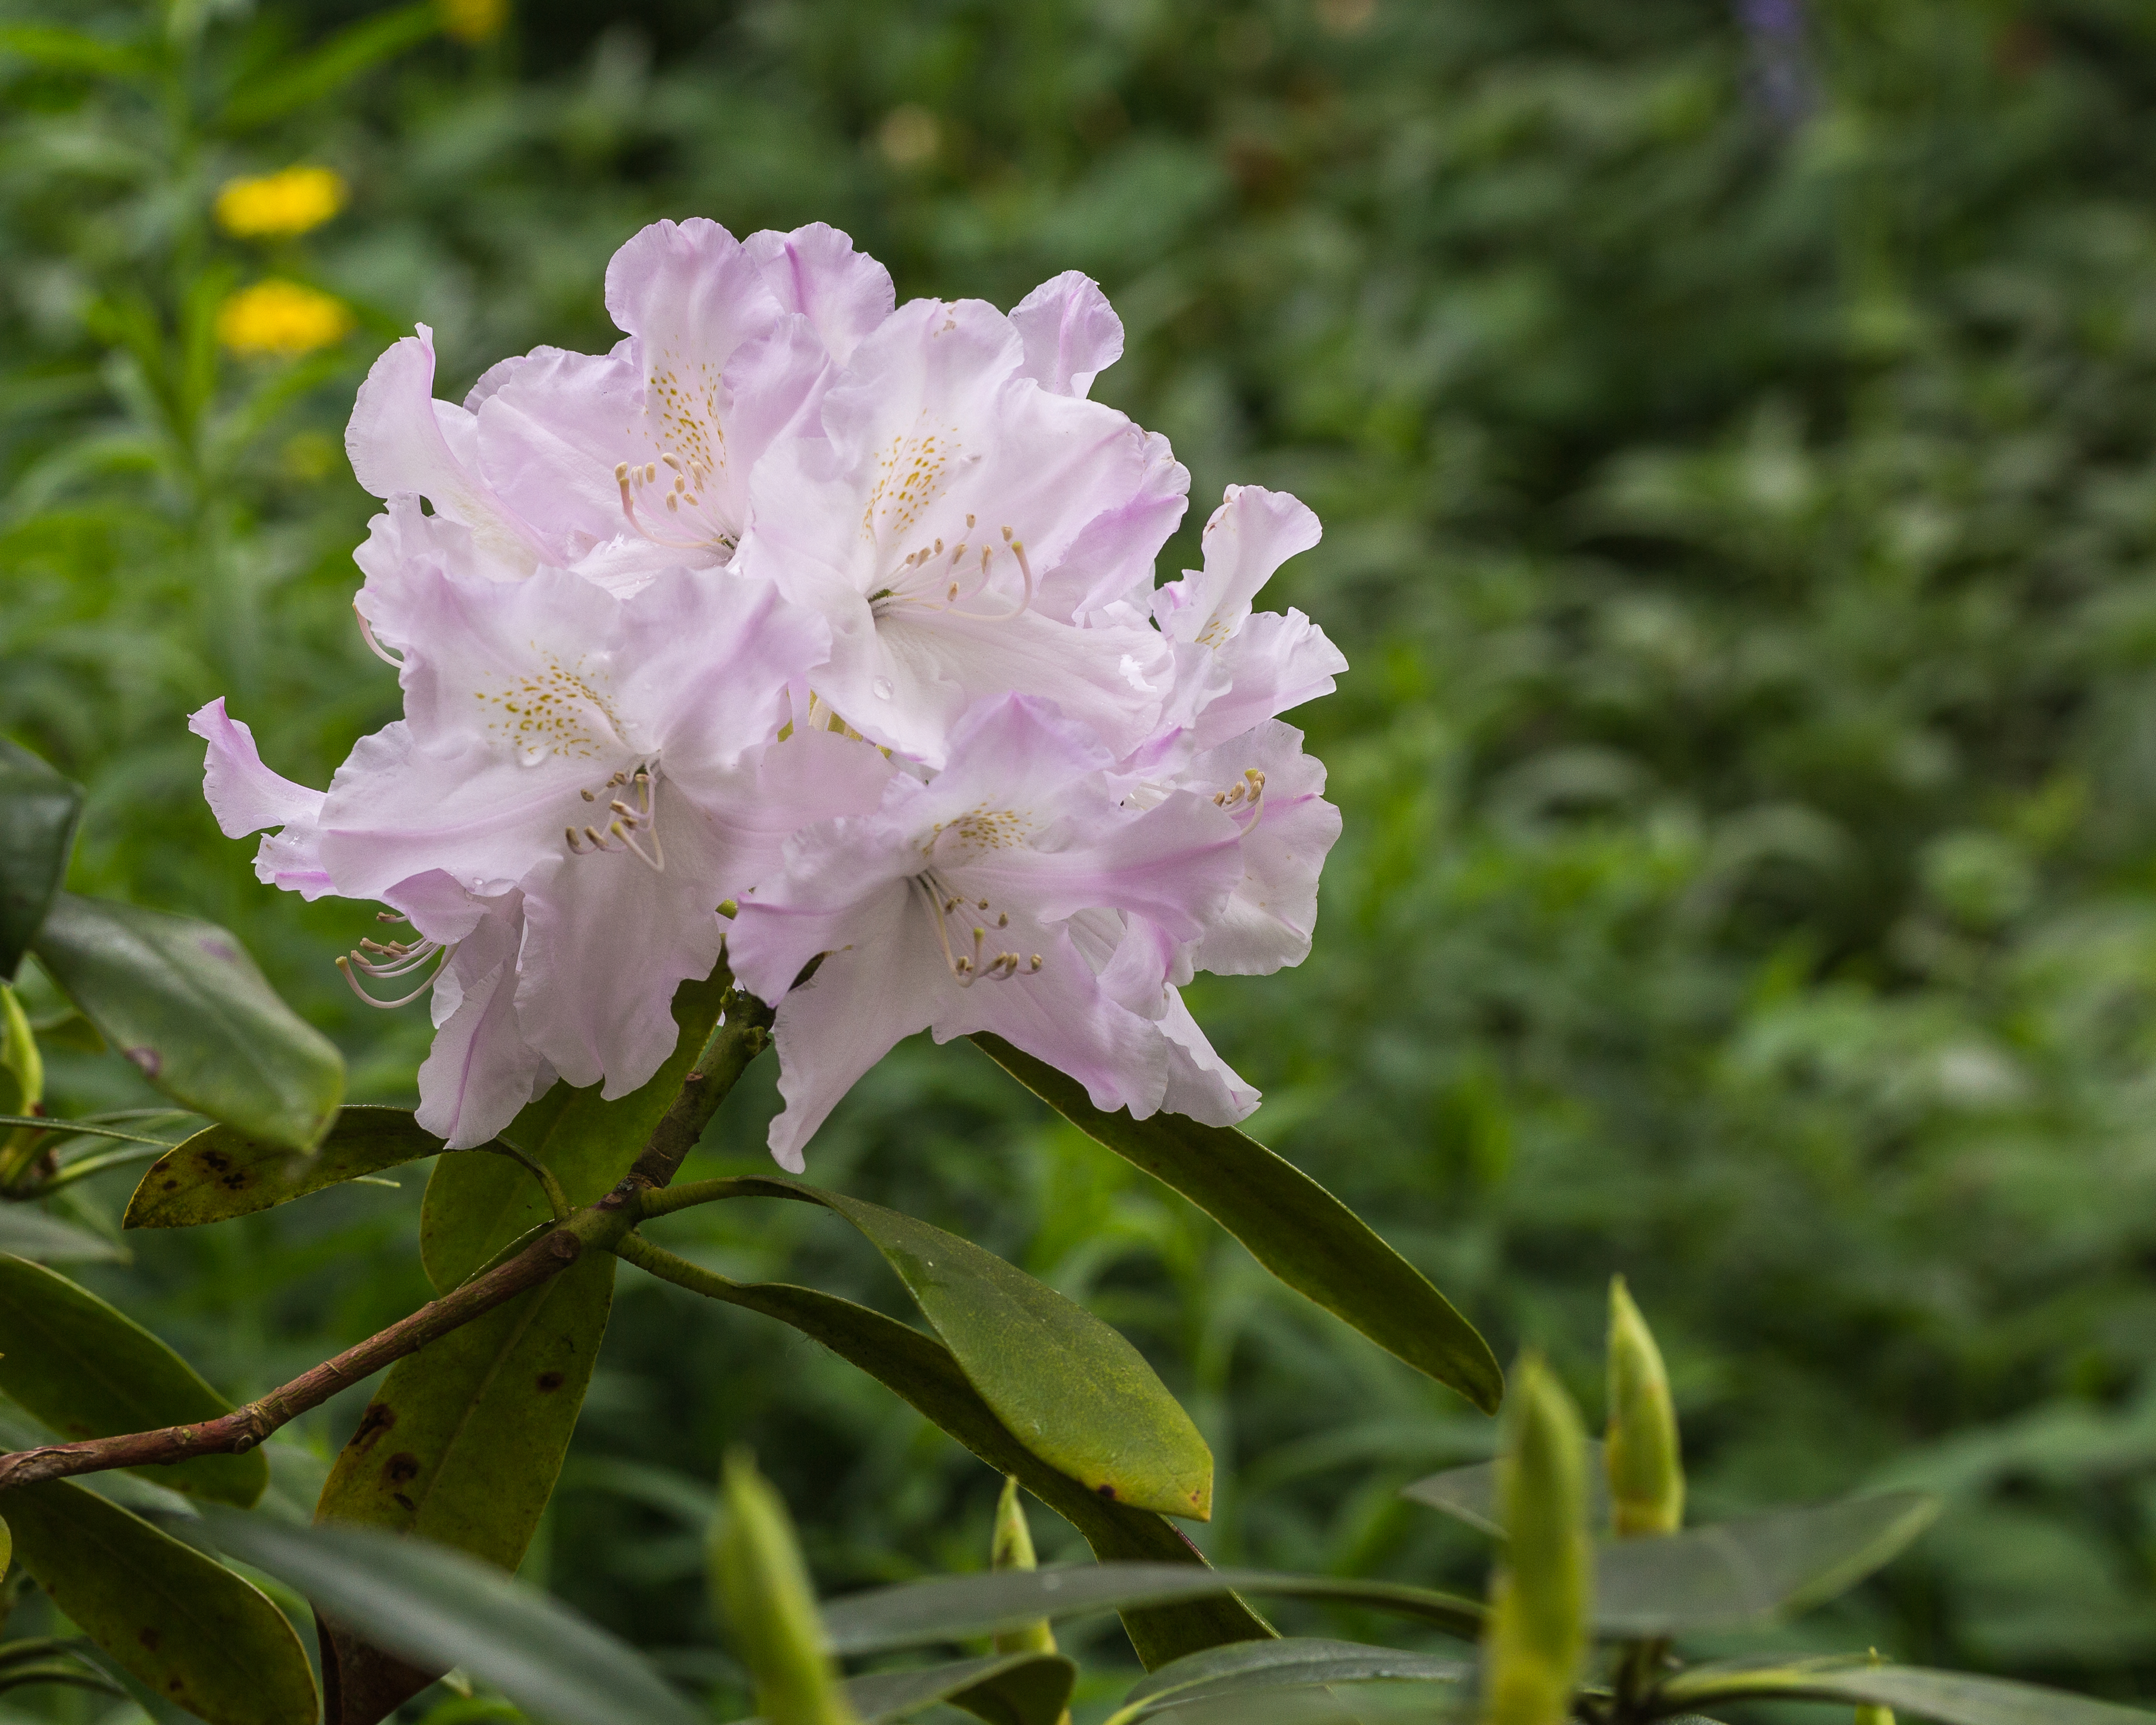 Bloem van een Rhododendron in een mooie zachte tint 02